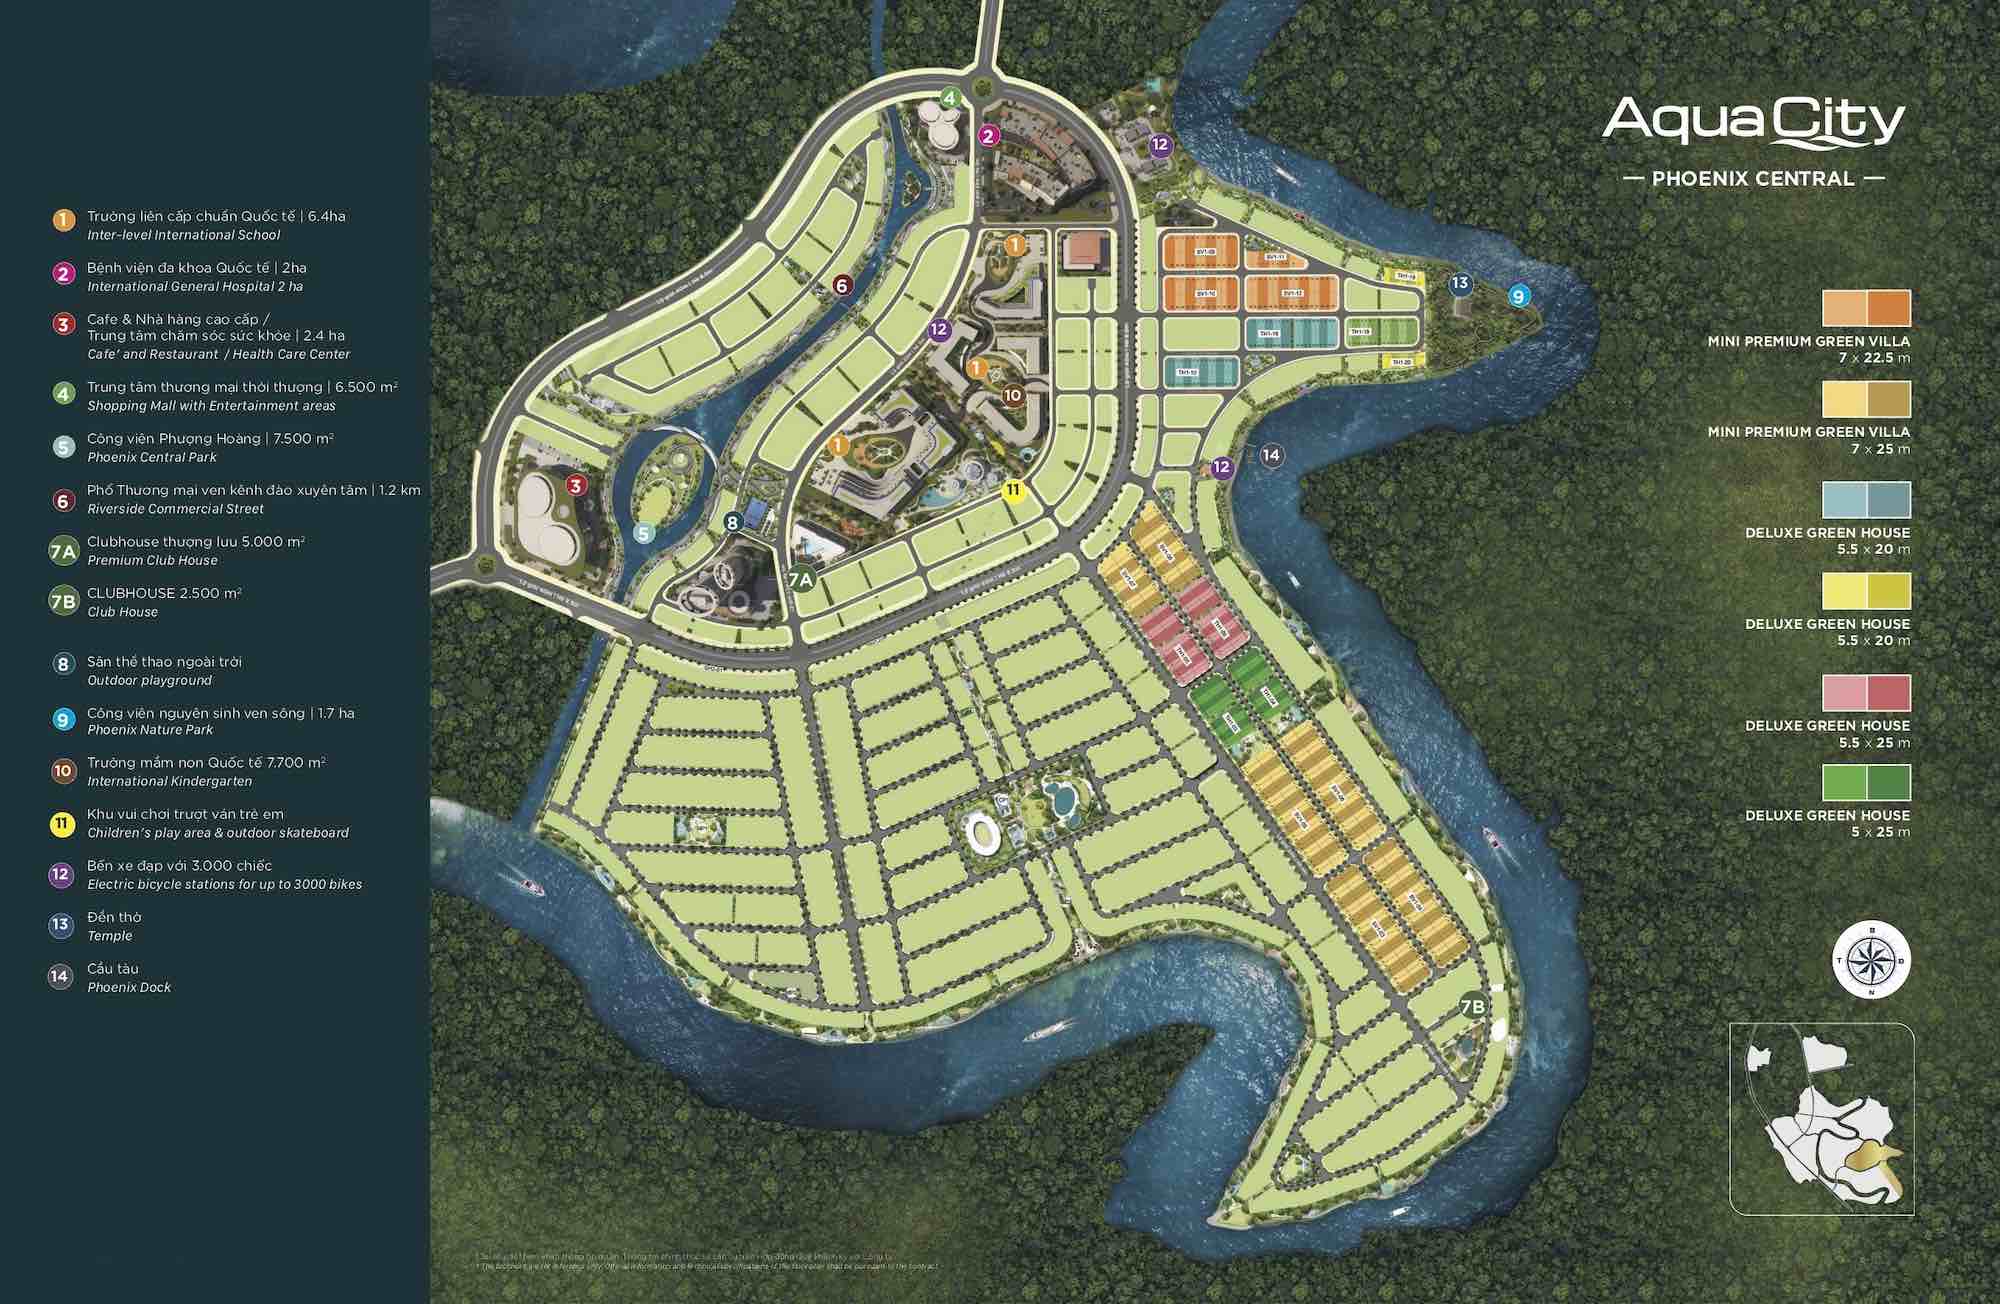 Mặt bằng tổng quát phân khu Phoenix Central Aqua City